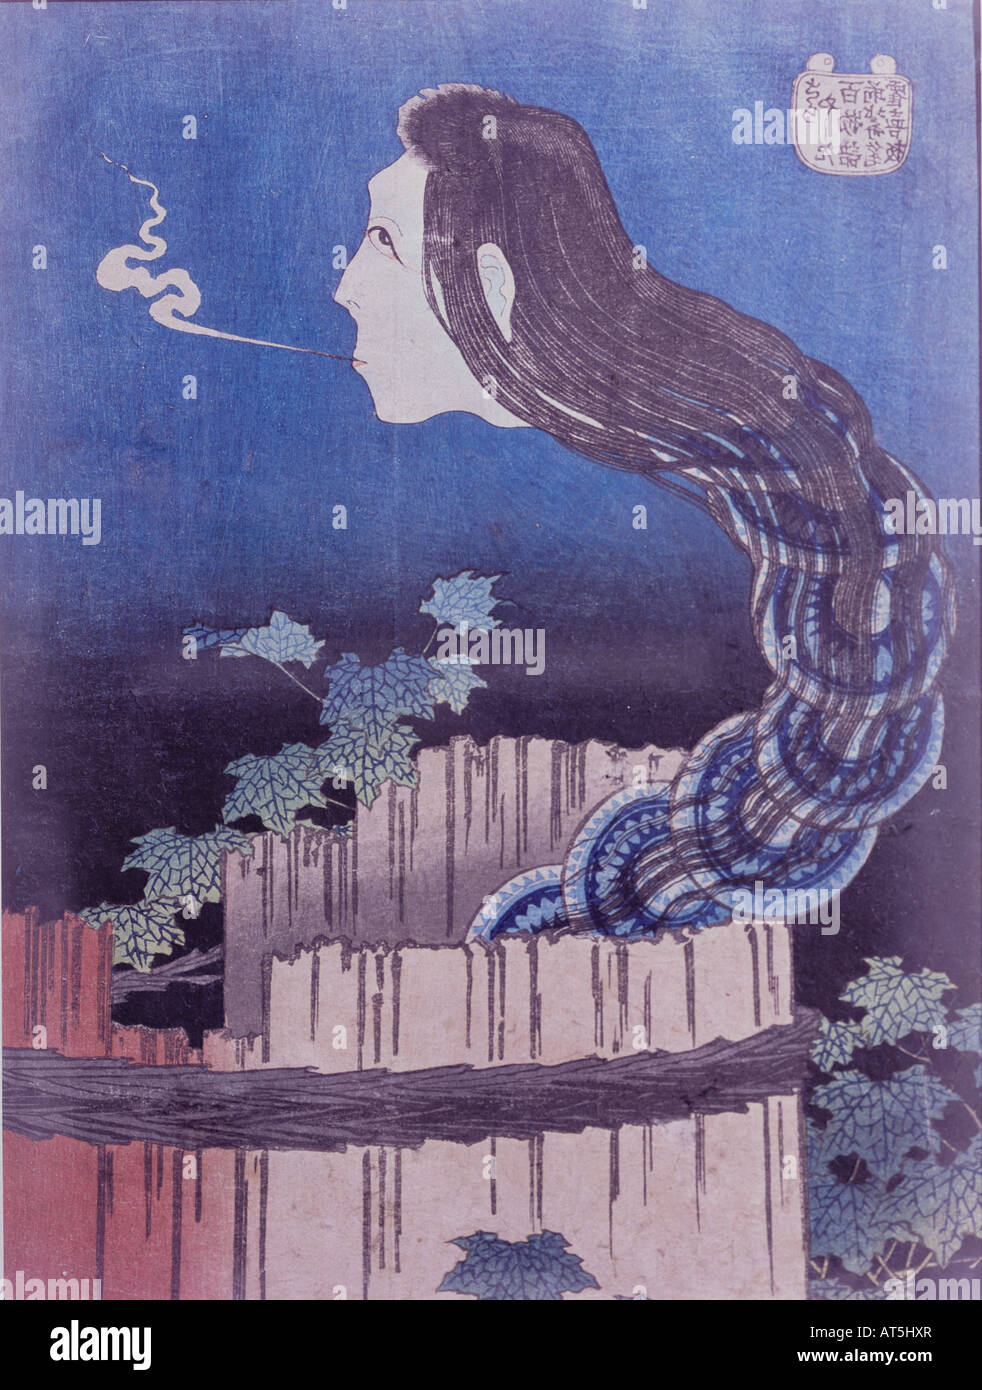 Bildende Kunst, Hokusai, Katsushika, (1760-1849), "Die Okuki platte Ghost', farbige Holzschnitt, Japan, 1825-1830, Artist's Urheberrecht nicht geklärt zu werden. Stockfoto